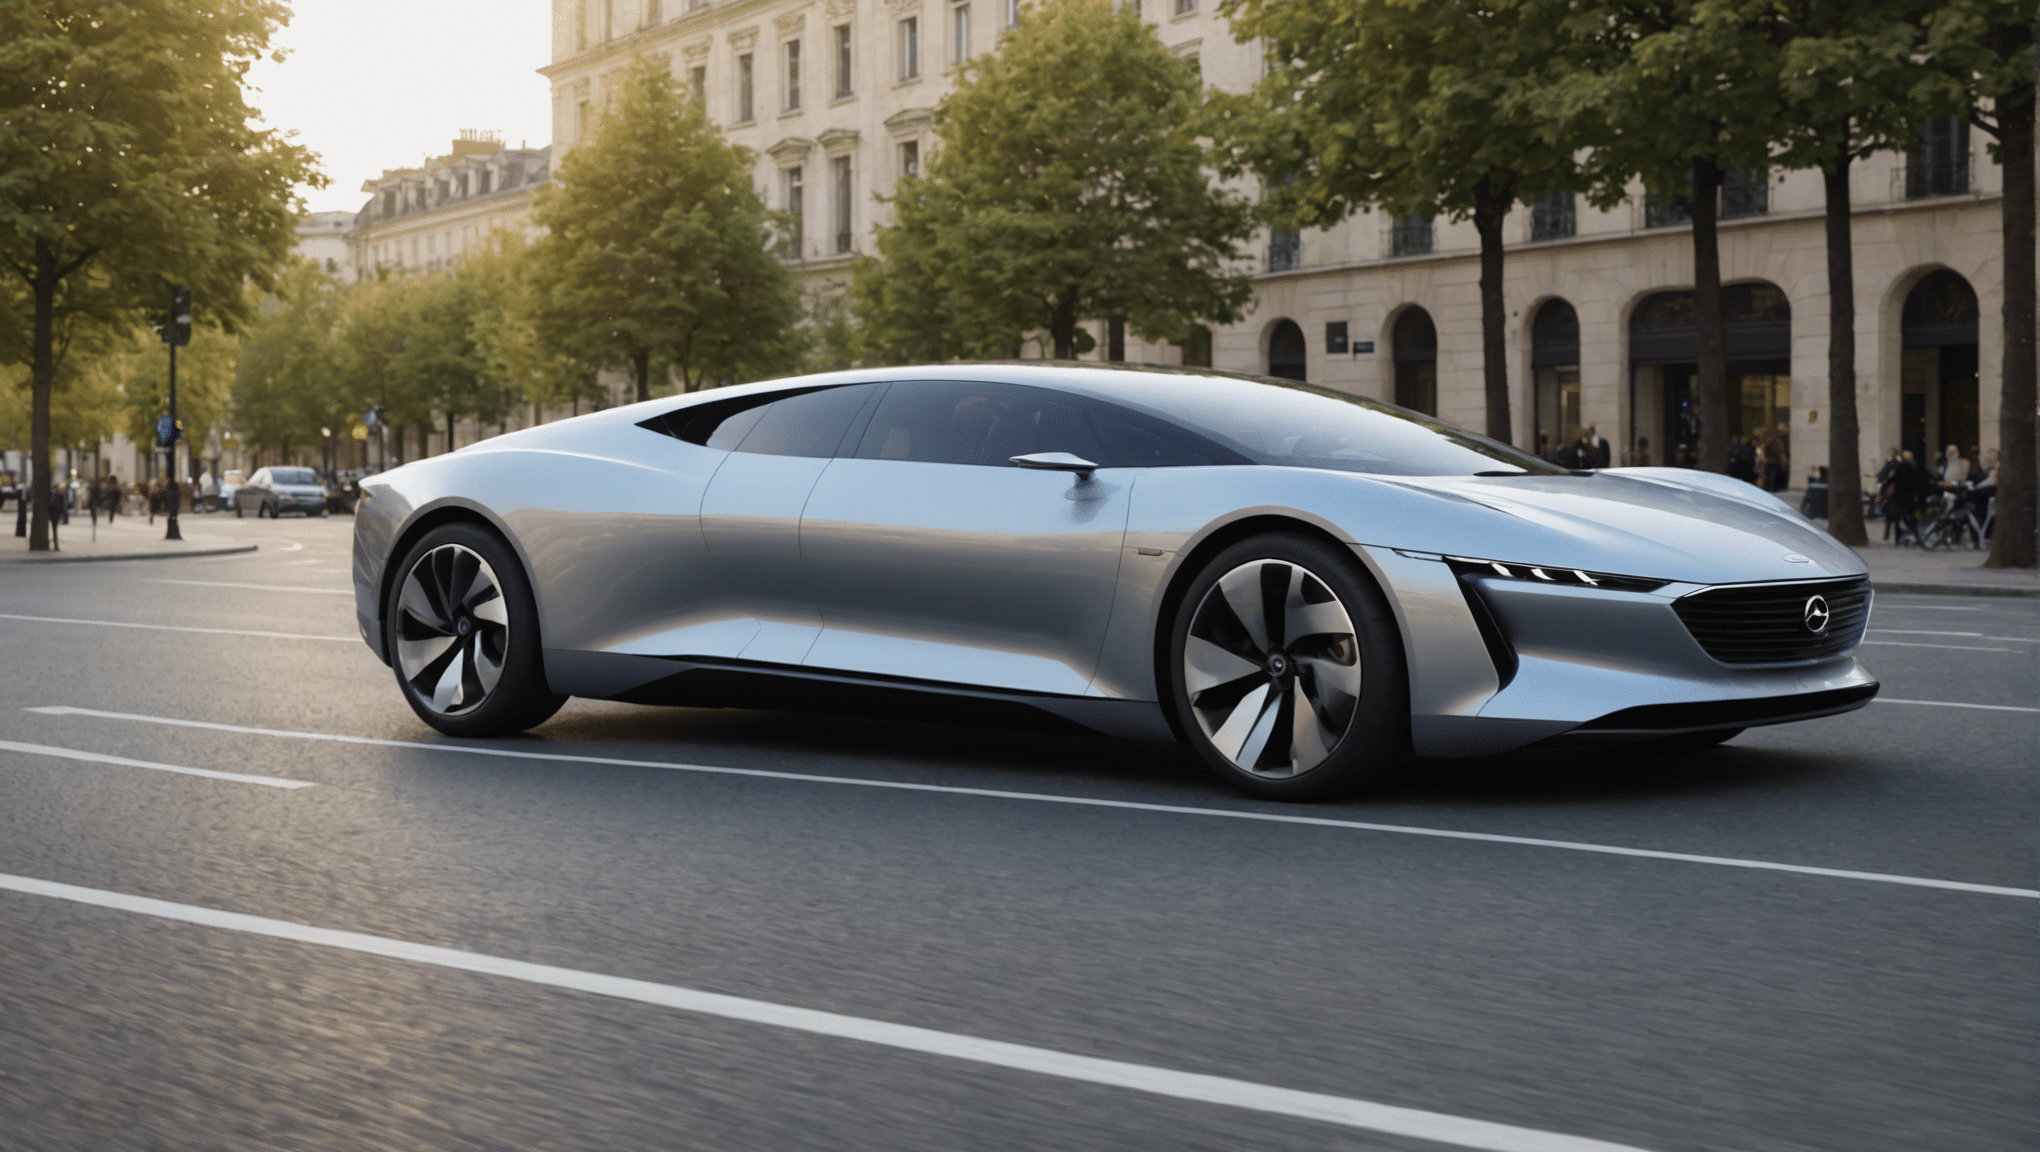 découvrez à quoi pourraient ressembler les designs extérieurs des voitures du futur et plongez dans l'anticipation de l'évolution esthétique des véhicules automobiles.